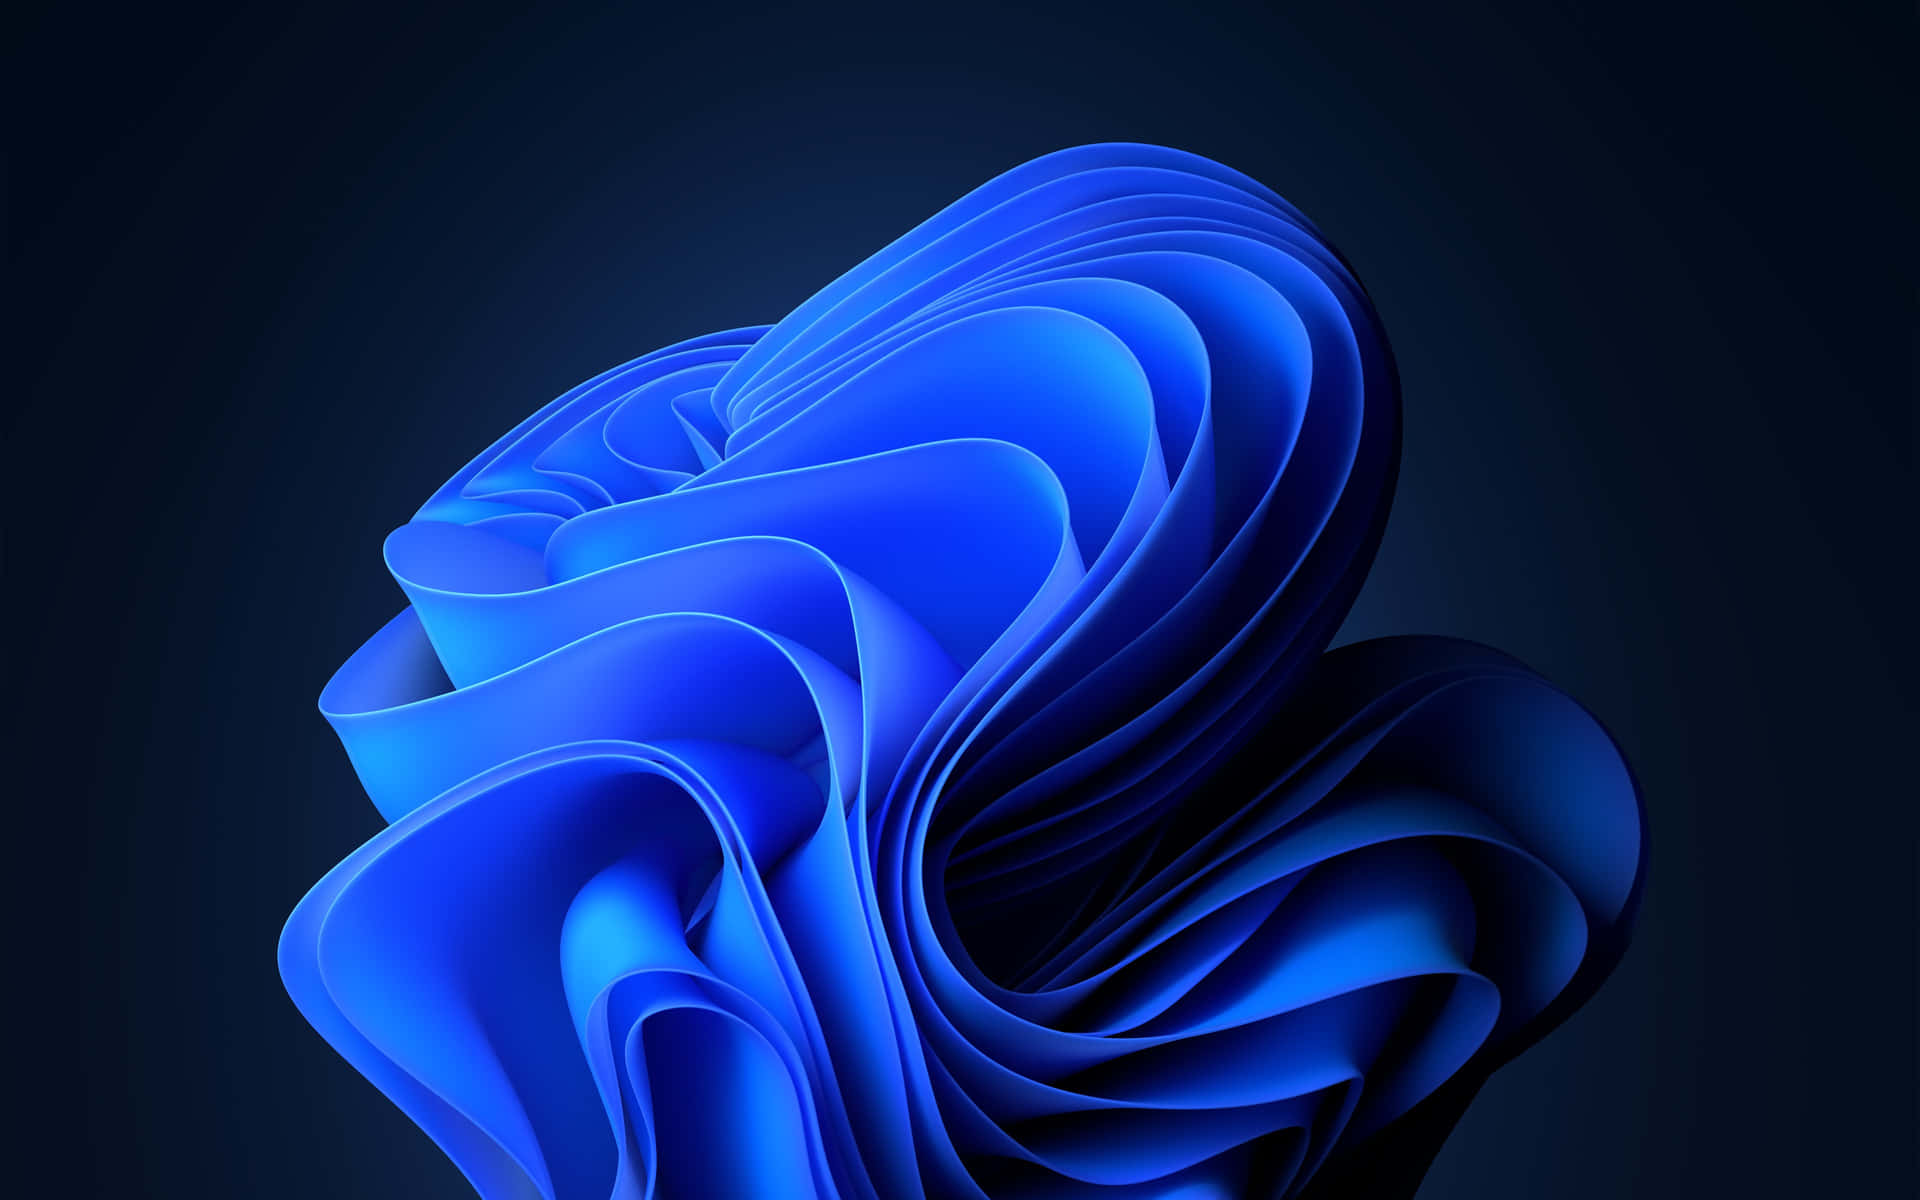 A Blue Abstract 3d Paper Sculpture Wallpaper